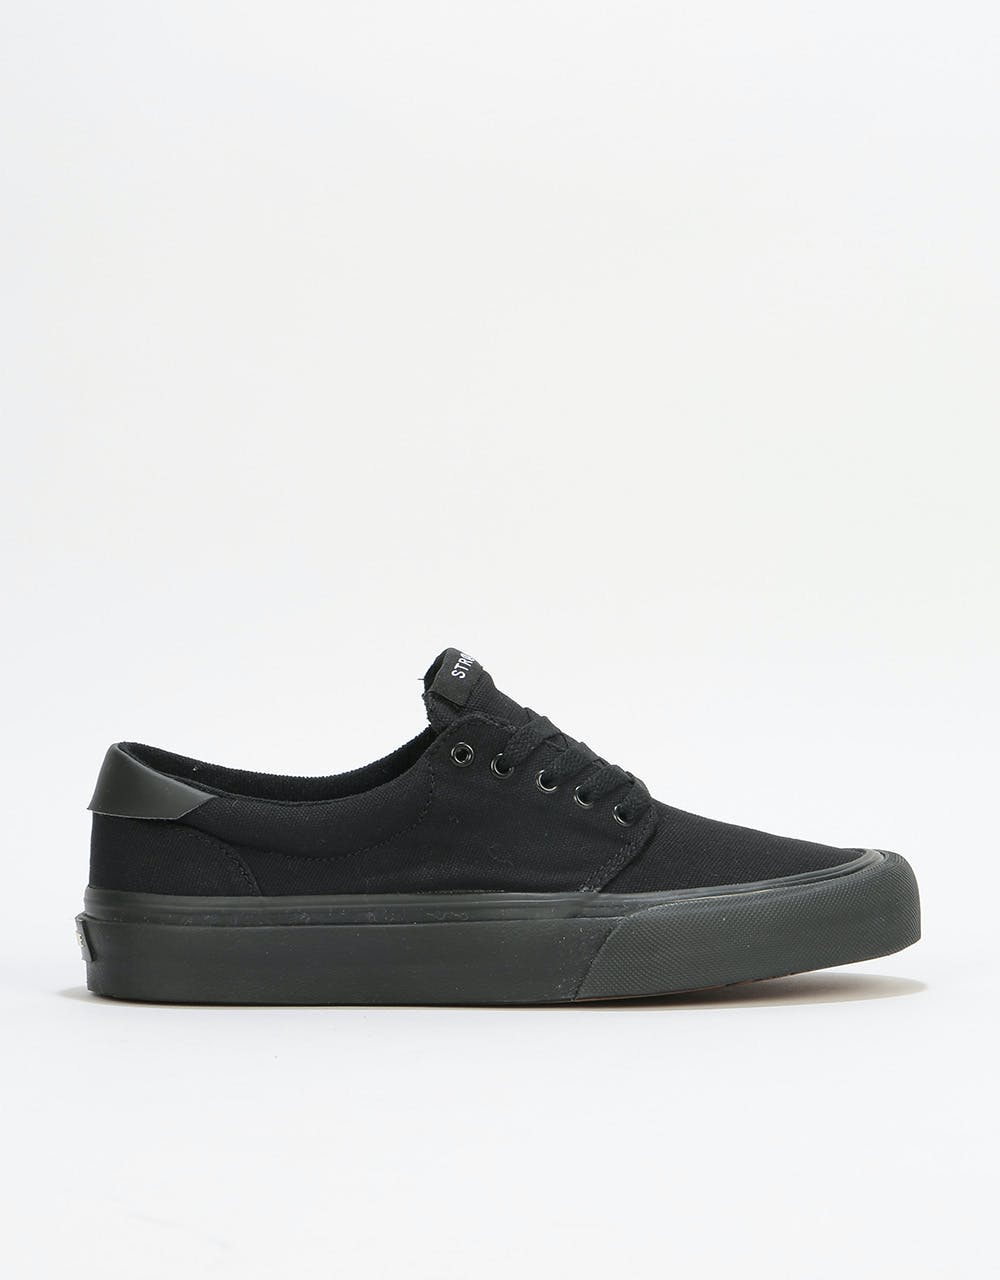 Straye Fairfax Skate Shoes - Black/Black Canvas